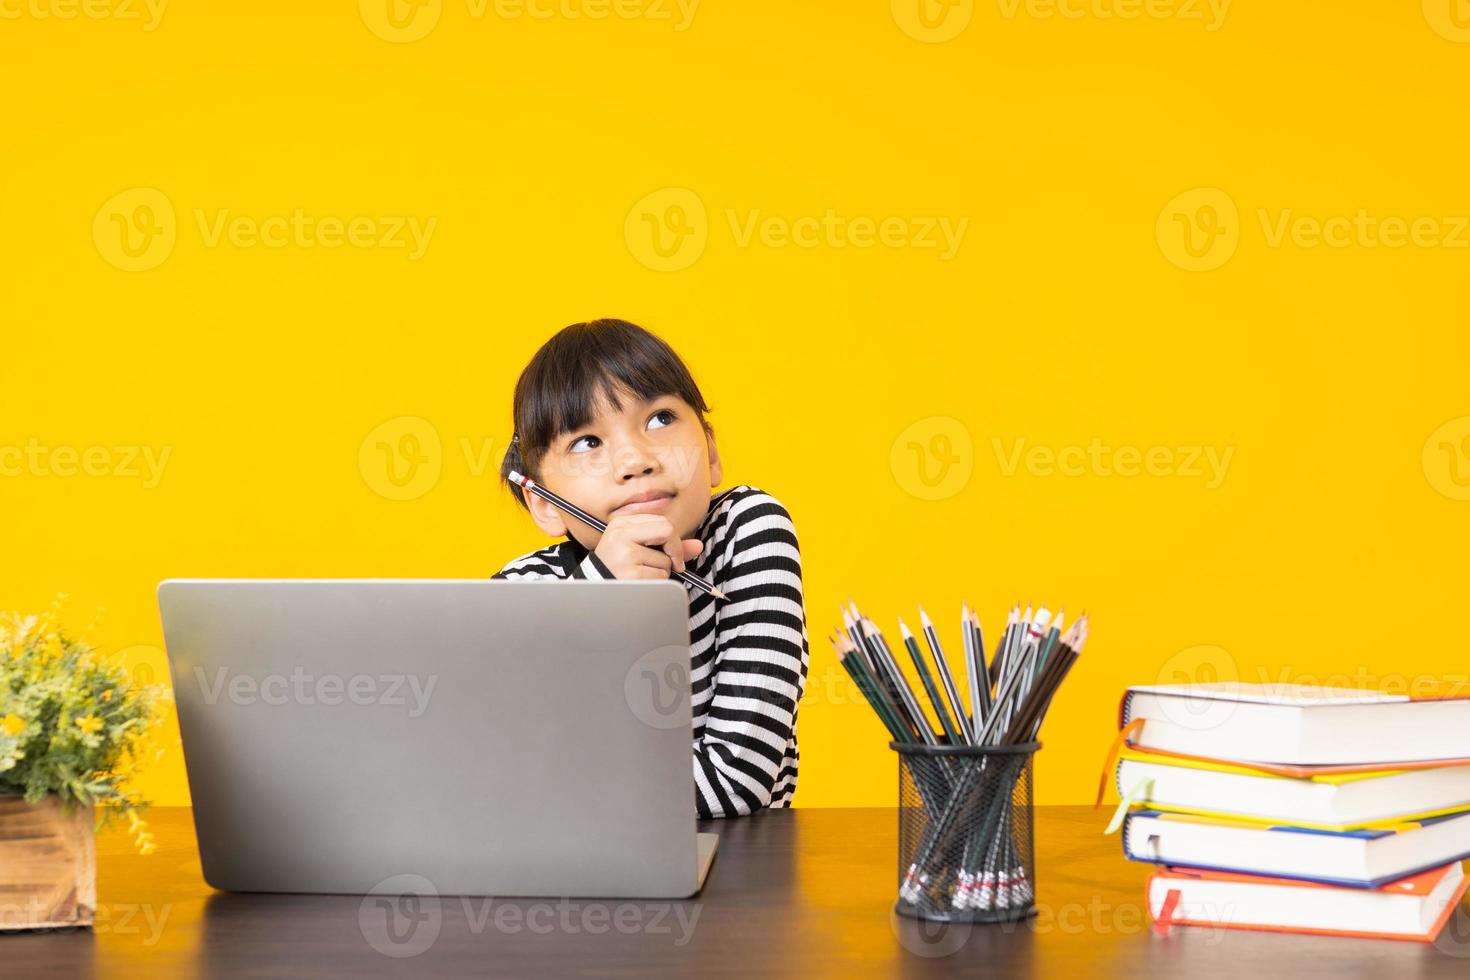 Aziatisch meisje met denken pose zit met laptop, boeken en potloden op een houten bureau met gele achtergrond foto